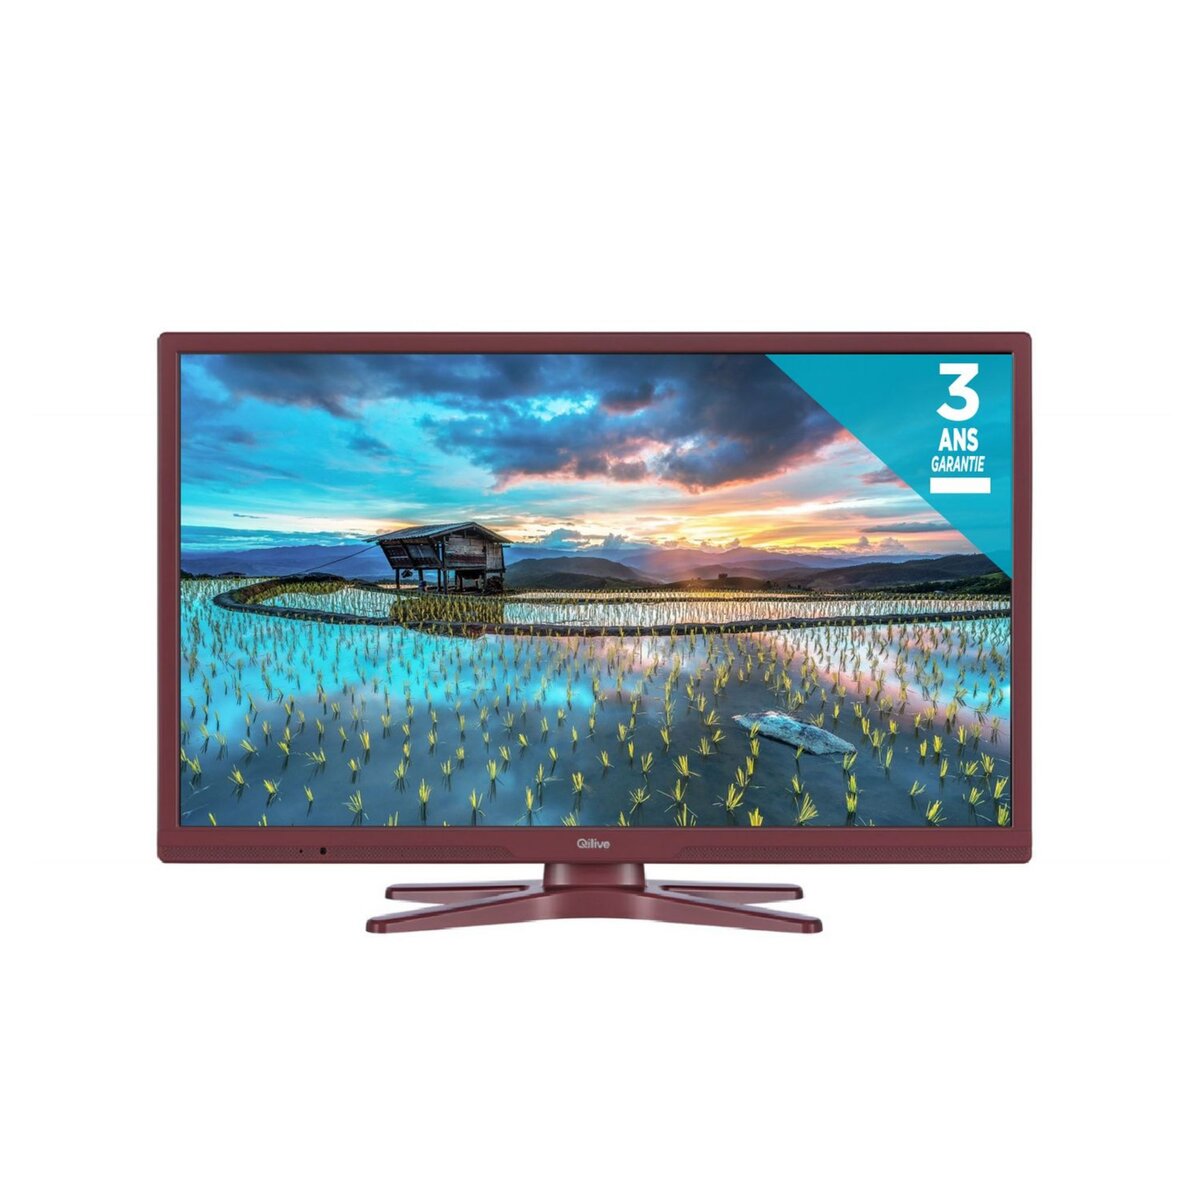 QILIVE Q24-161S TV LED HD 60 cm - Prune